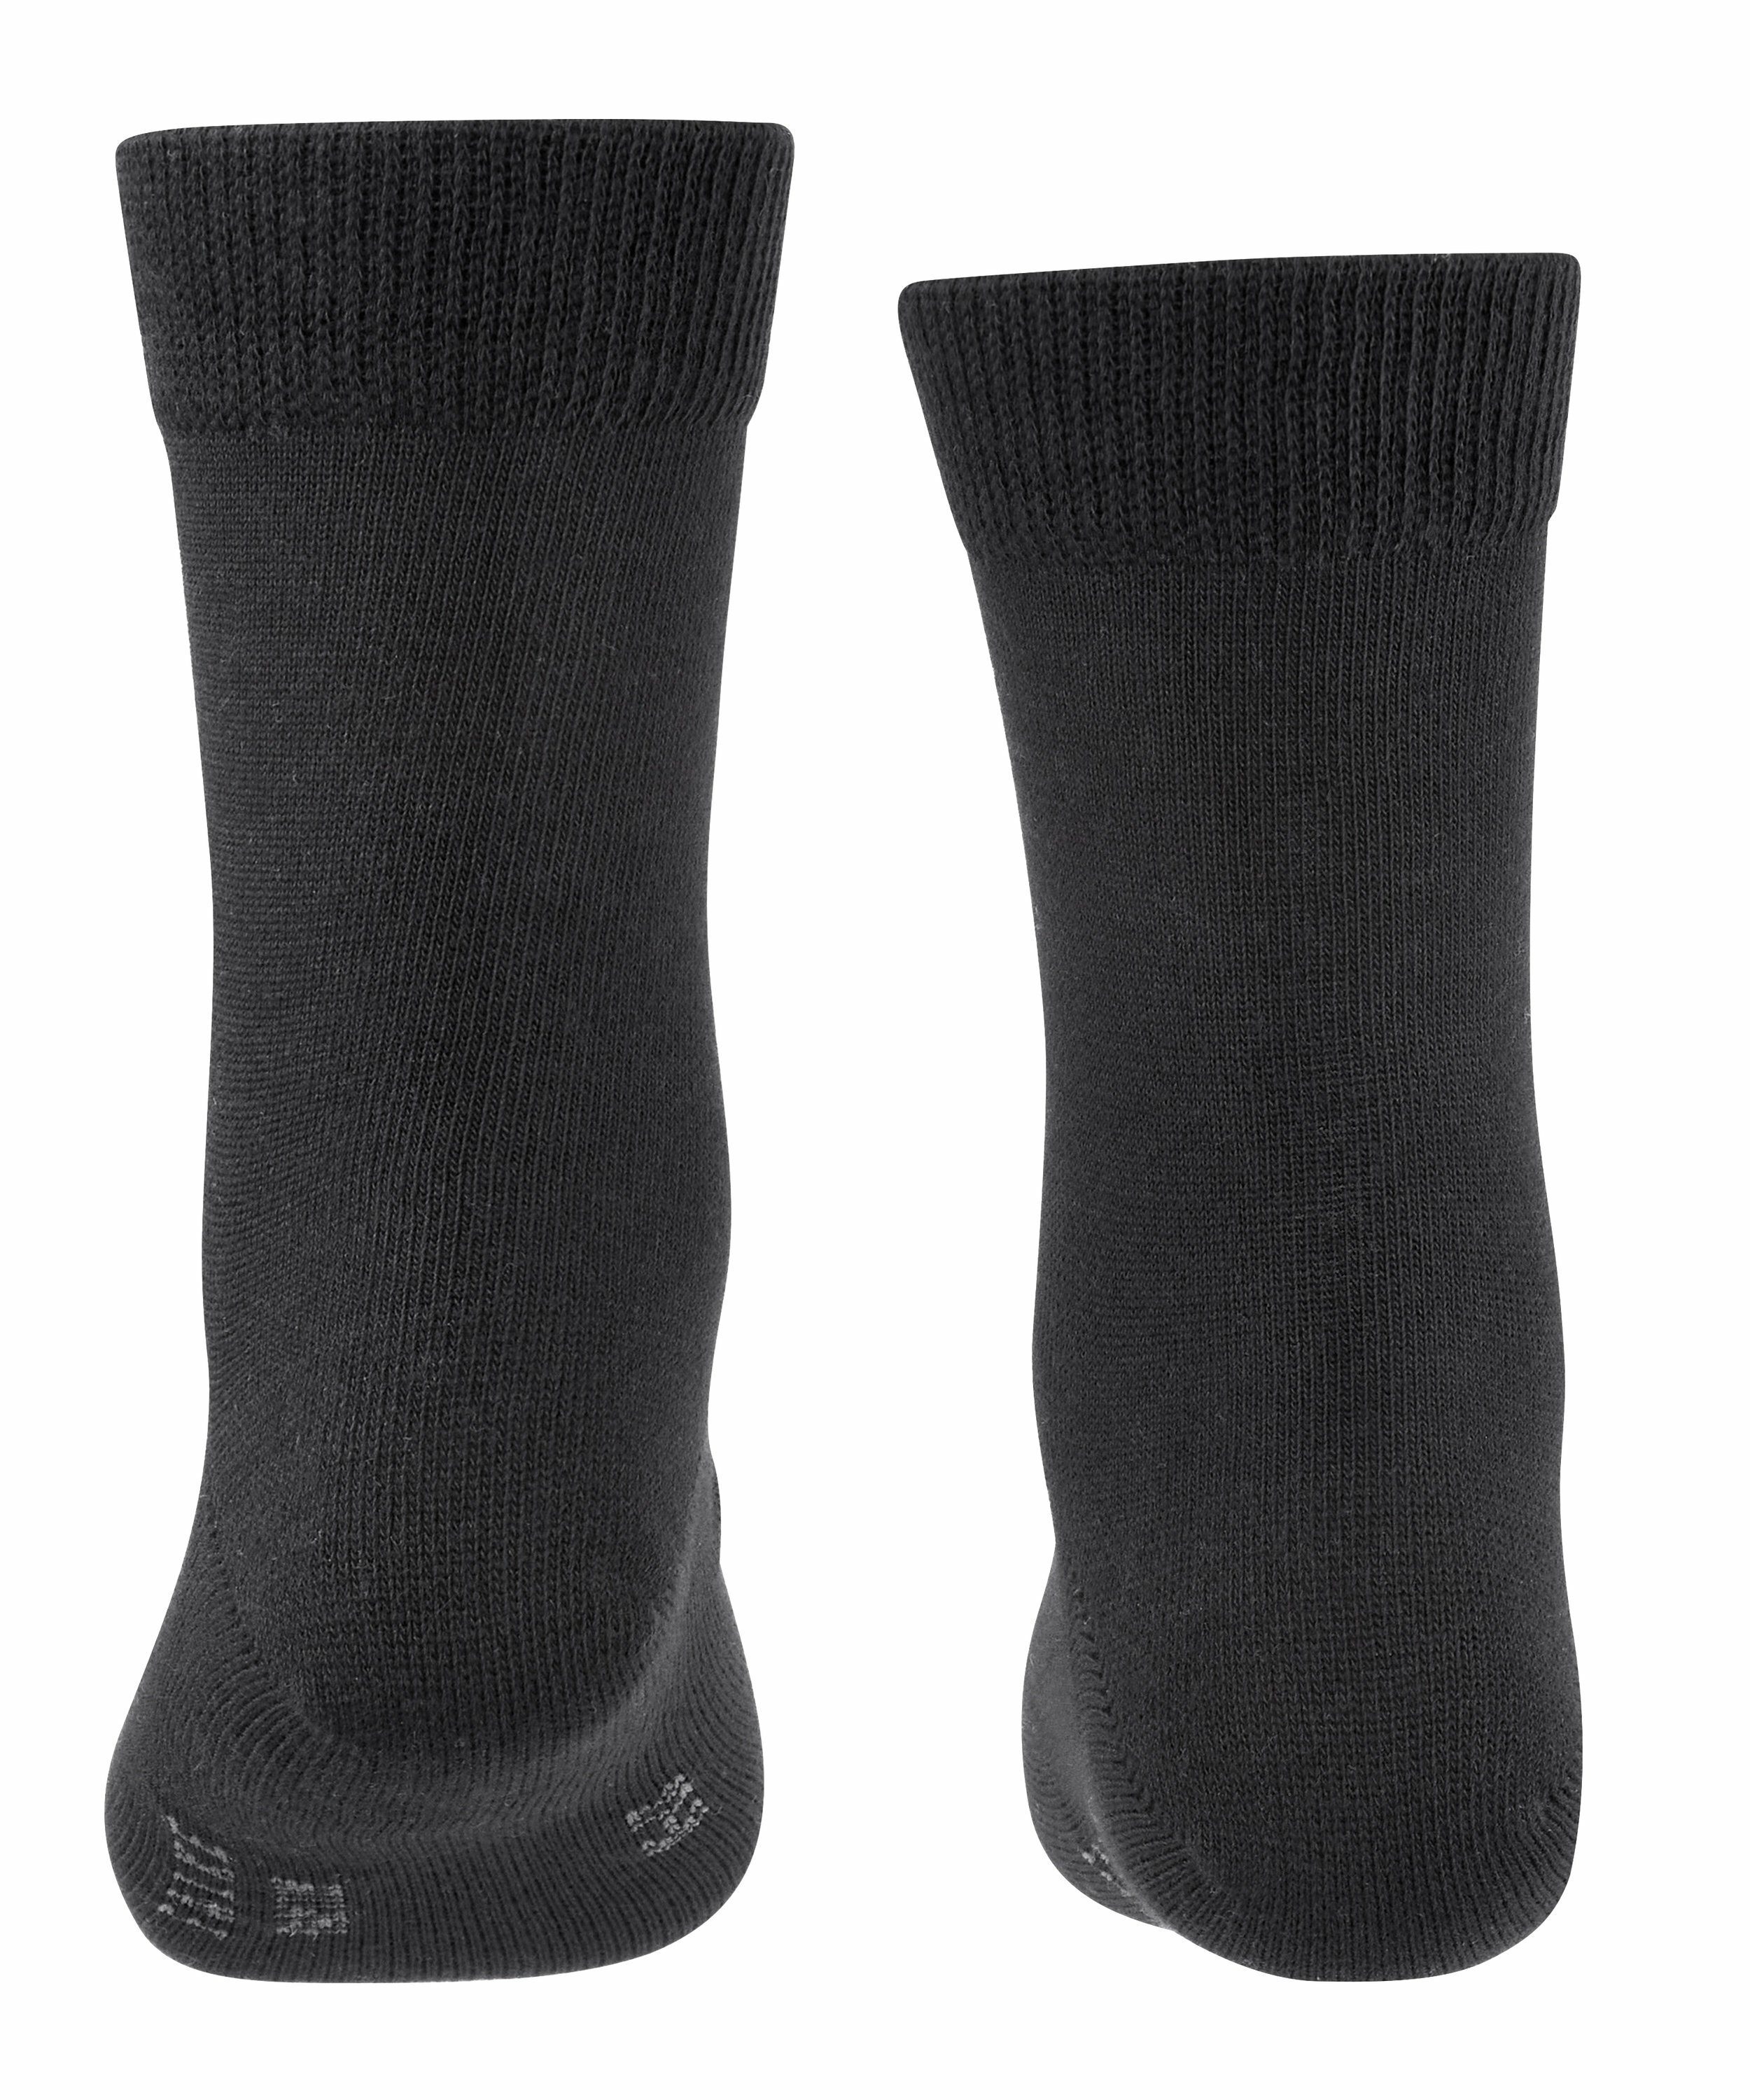 (3000) FALKE Socken Family 3-Pack black (3-Paar)